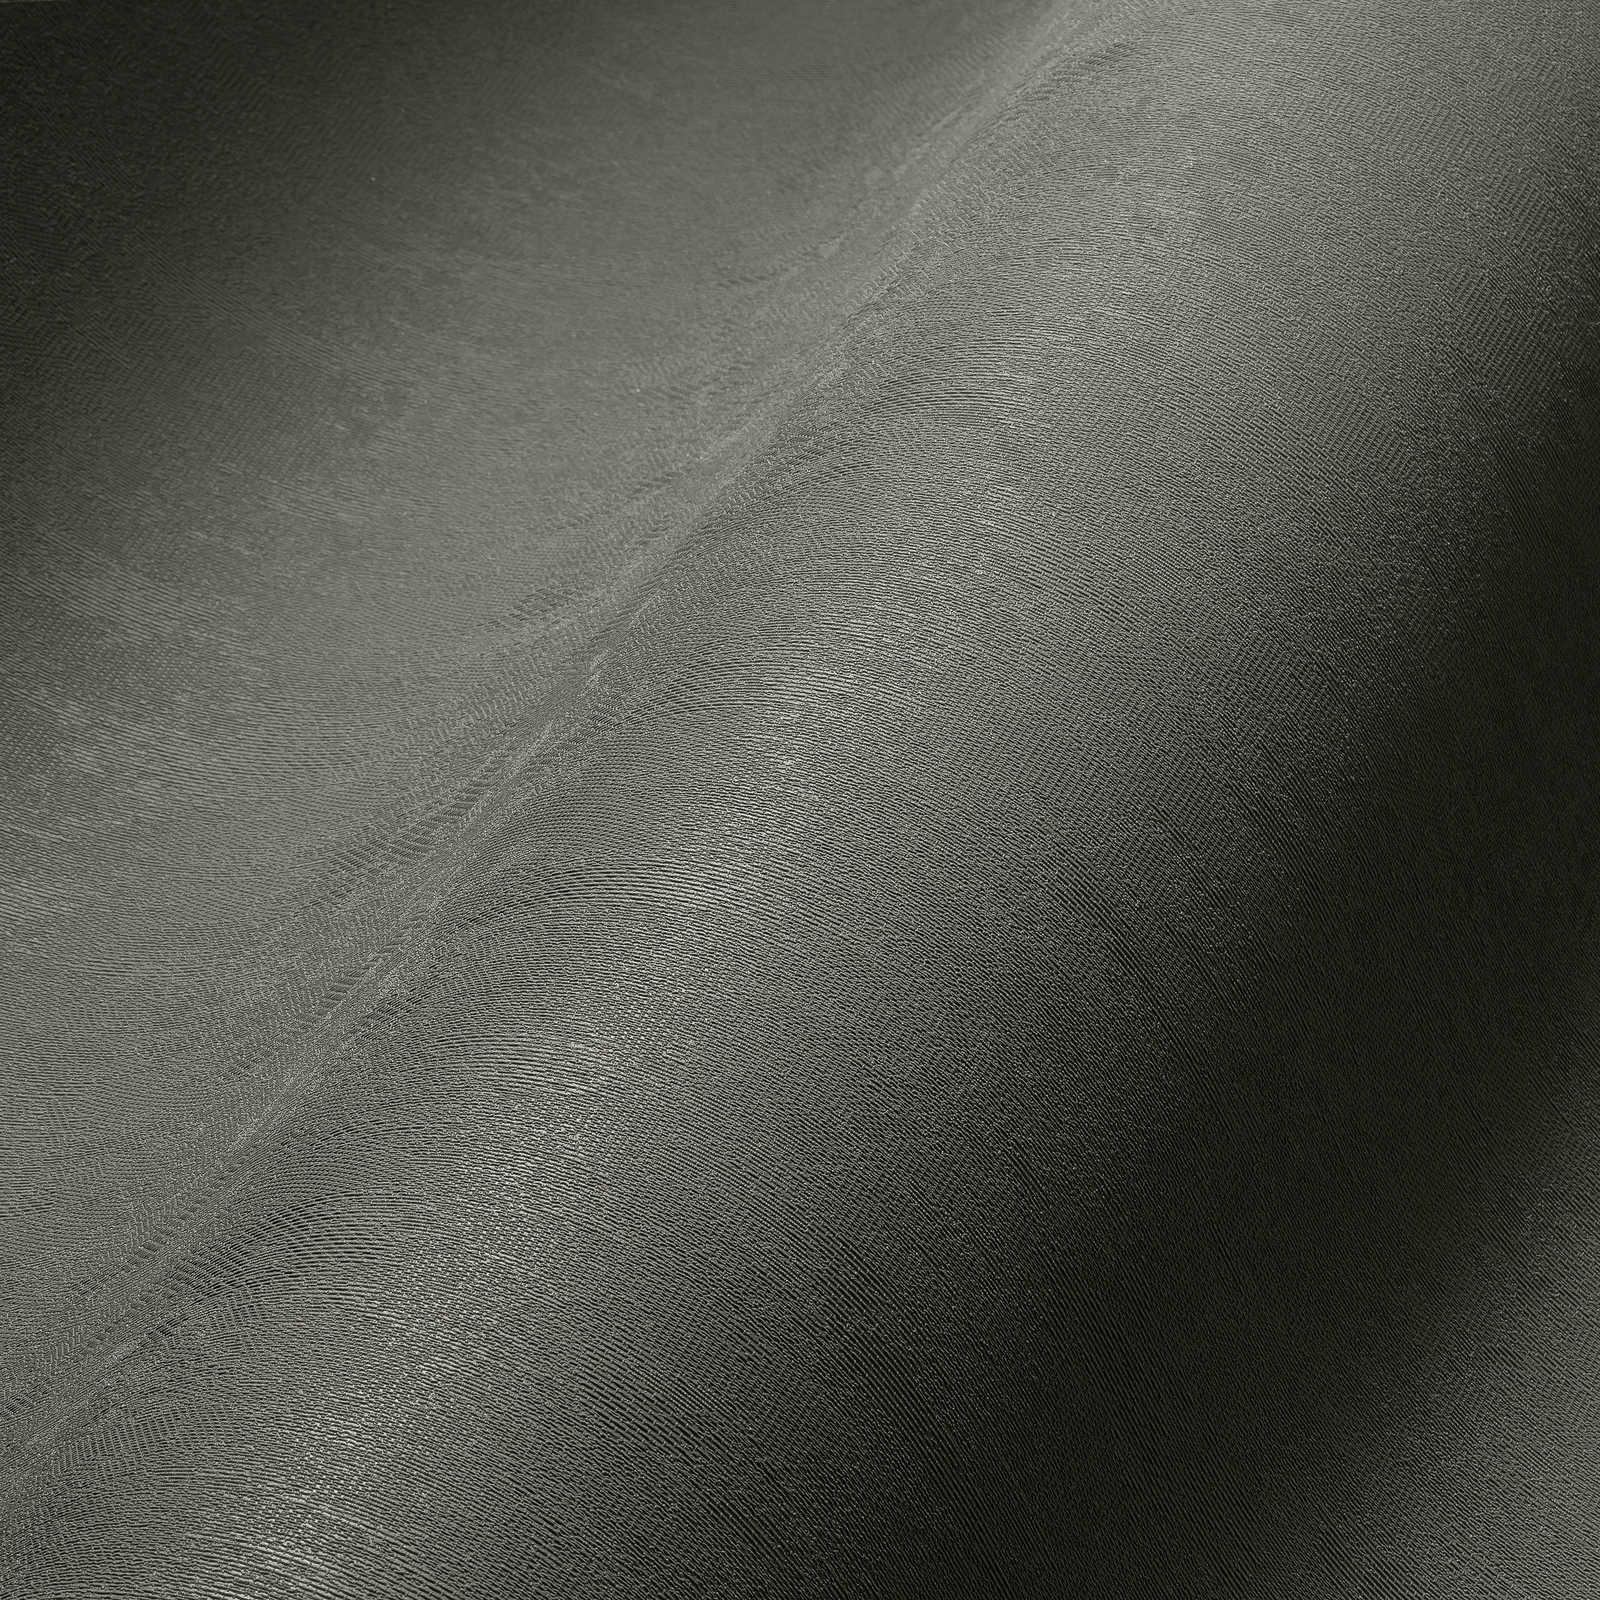             Papier peint intissé kaki foncé uni, finition satinée - gris
        